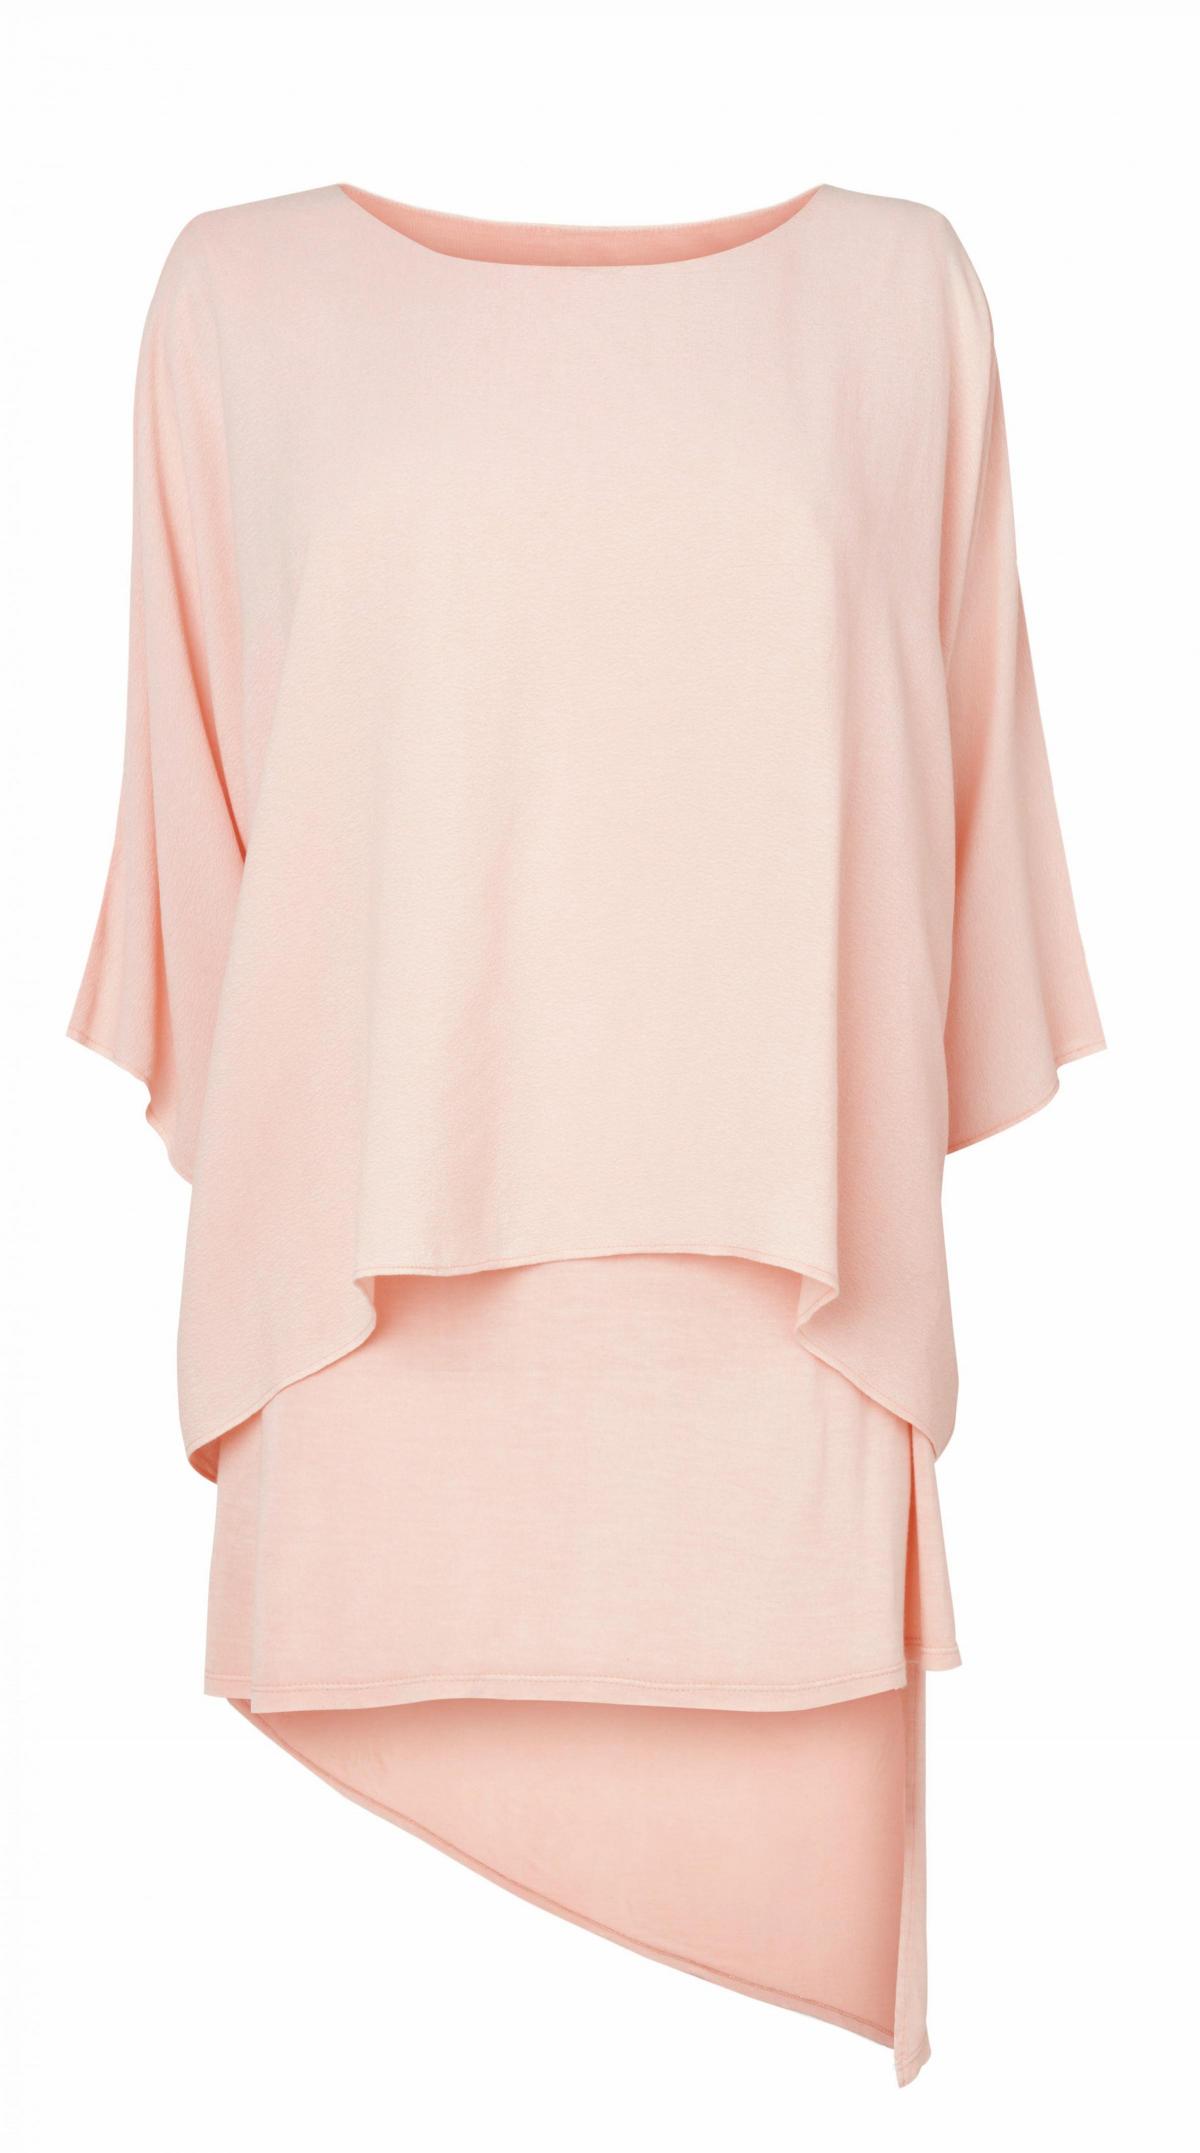 Phase Eight, Alexia oversized blouse, £65